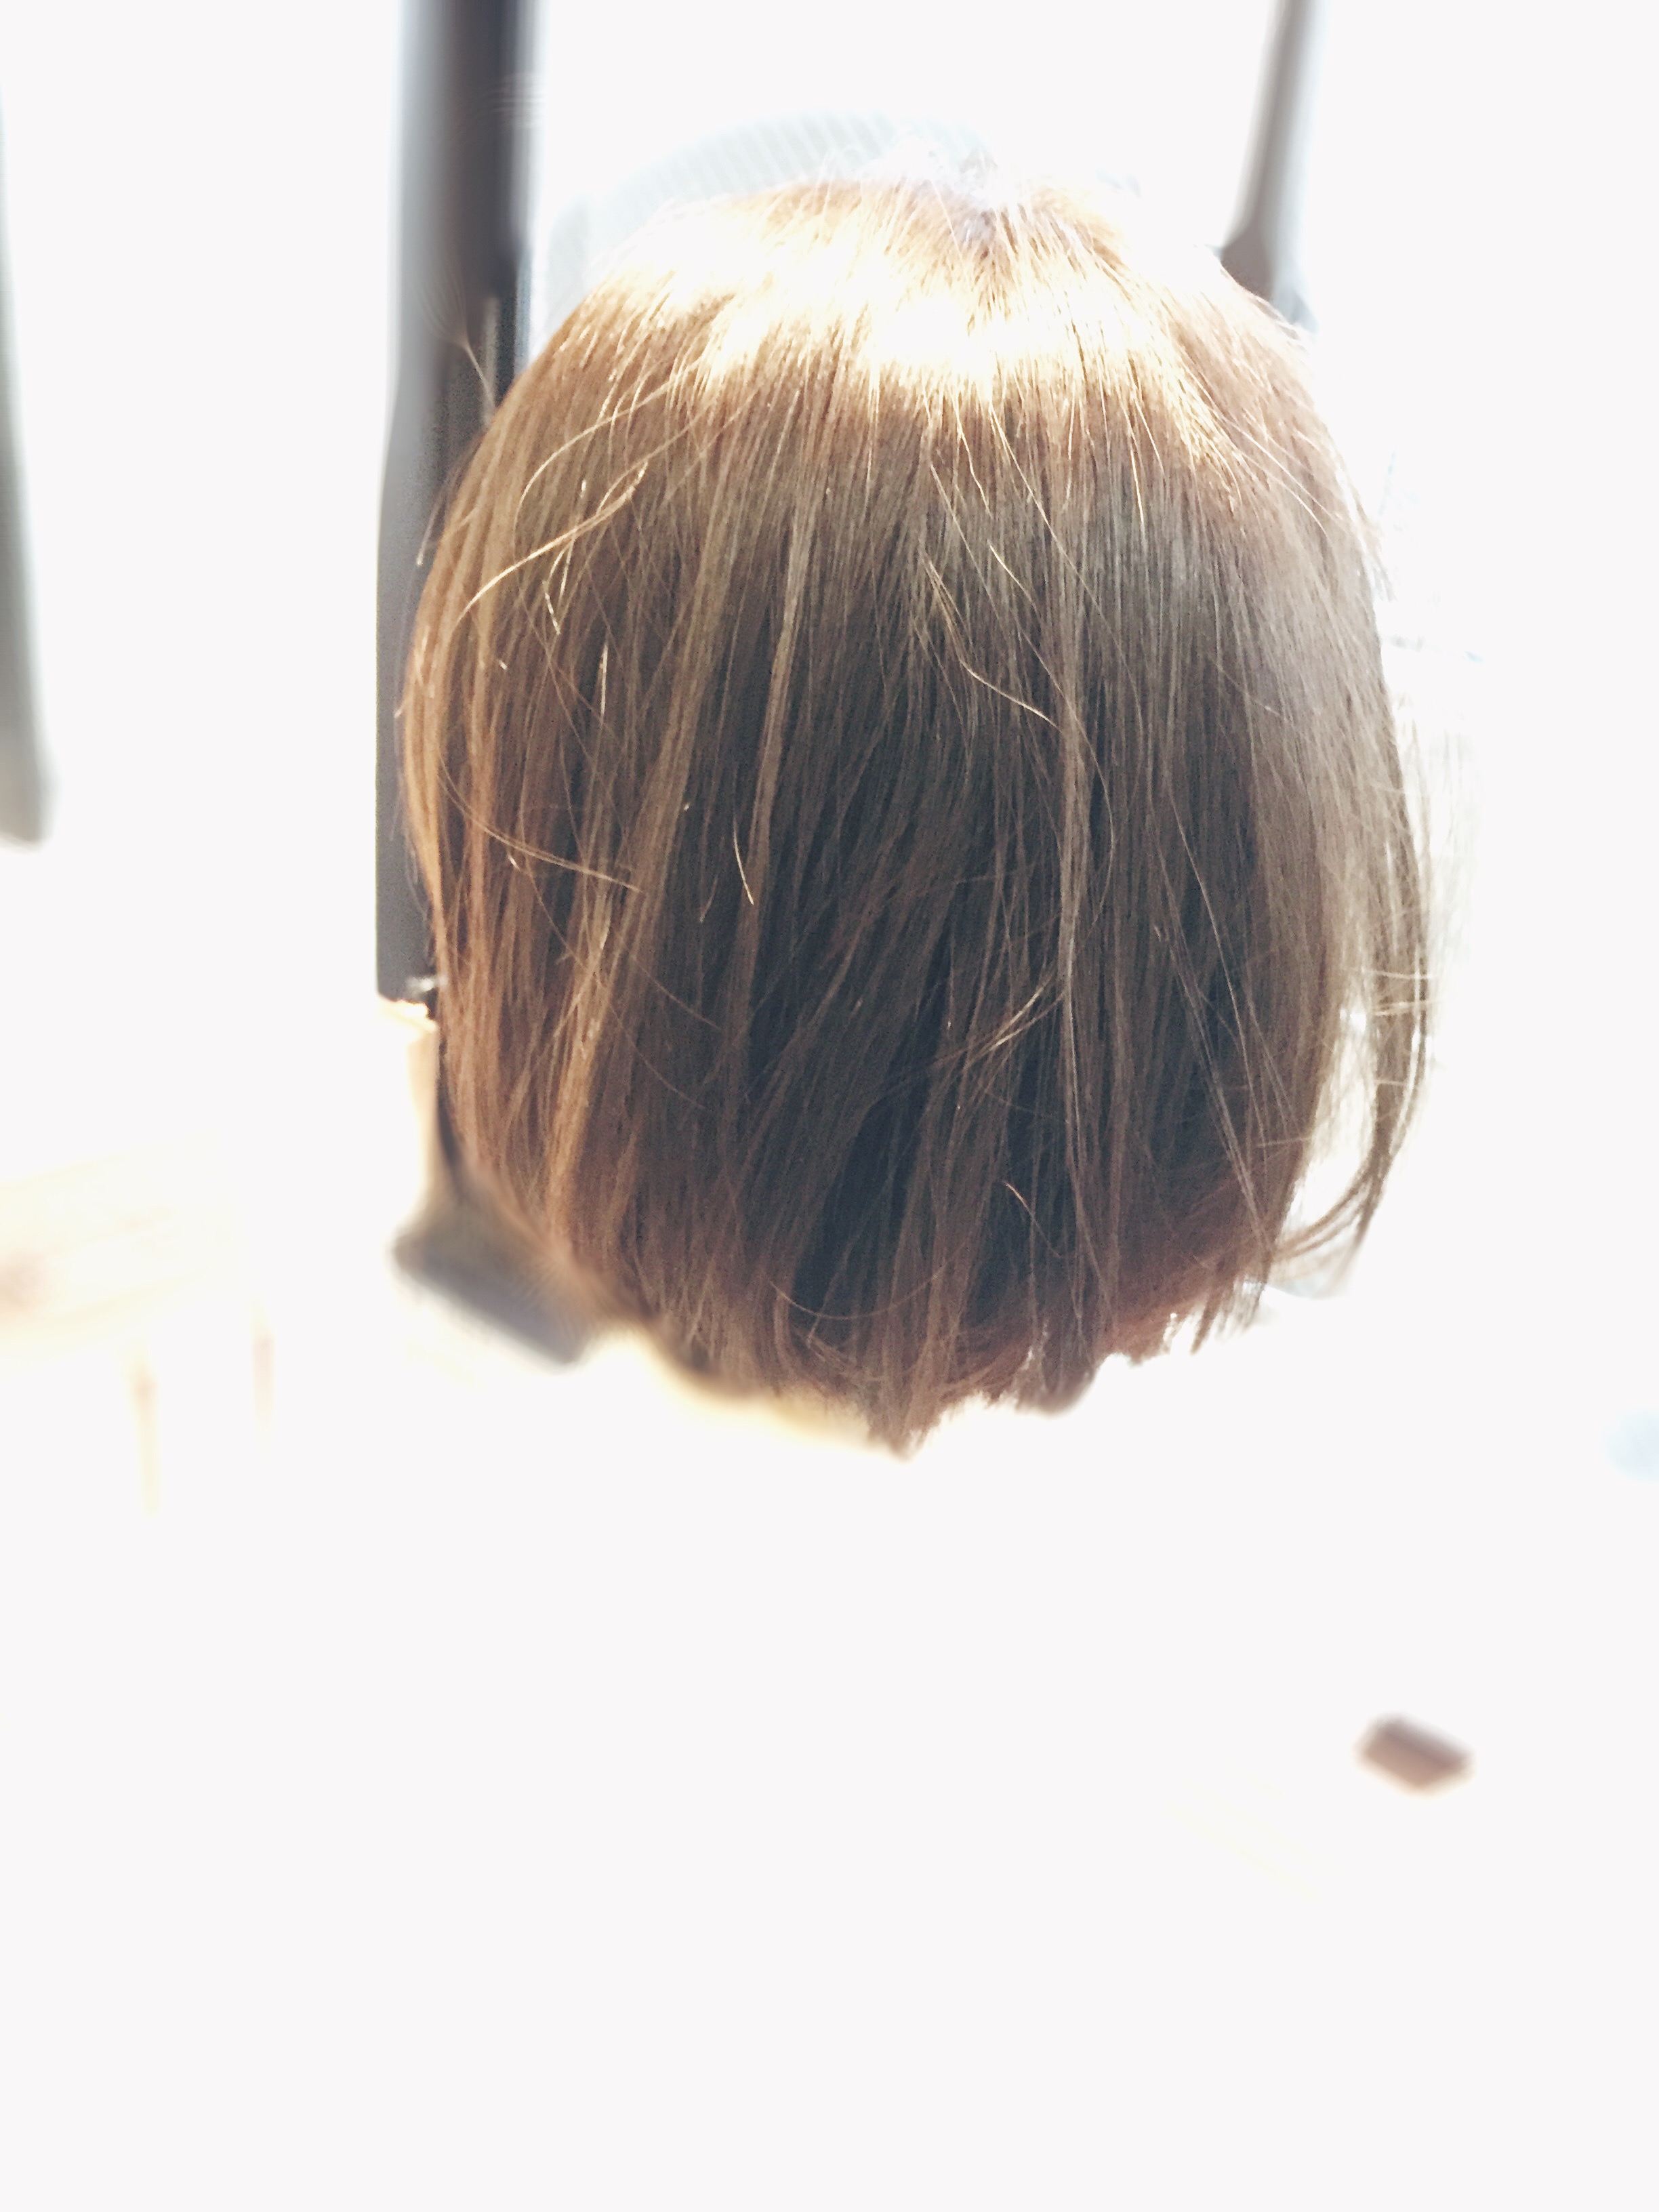 髪が多い人の髪型 剛毛でも切りっぱなしボブは可能 神戸三宮の美容室プライベートヘアサロンsur